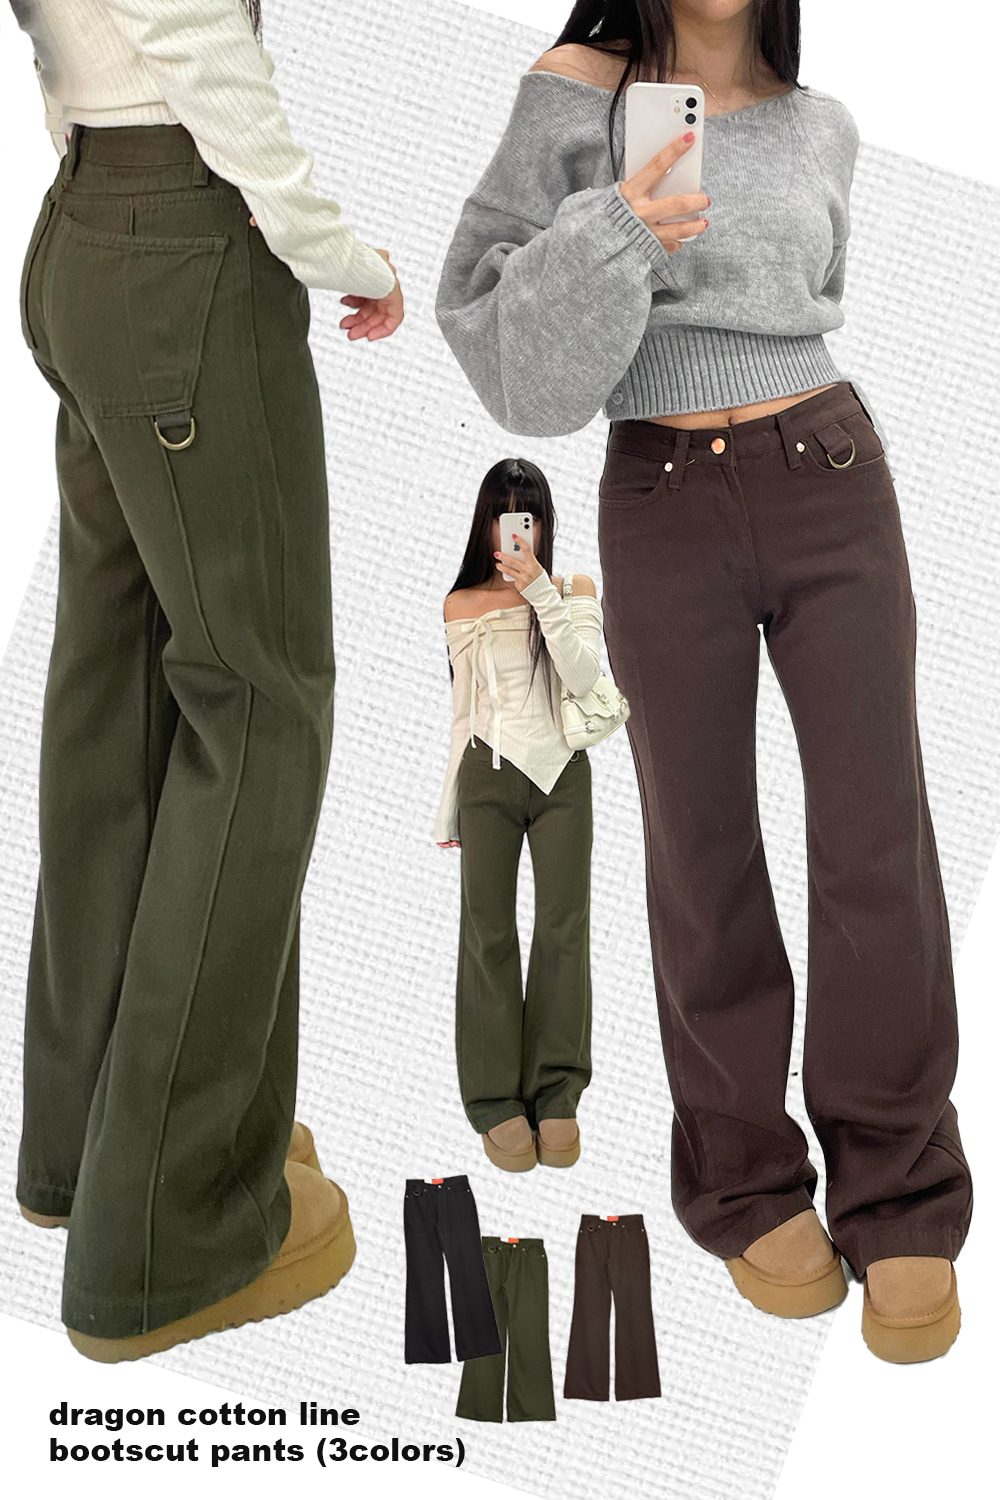 dragon cotton line bootscut pants (3colors)